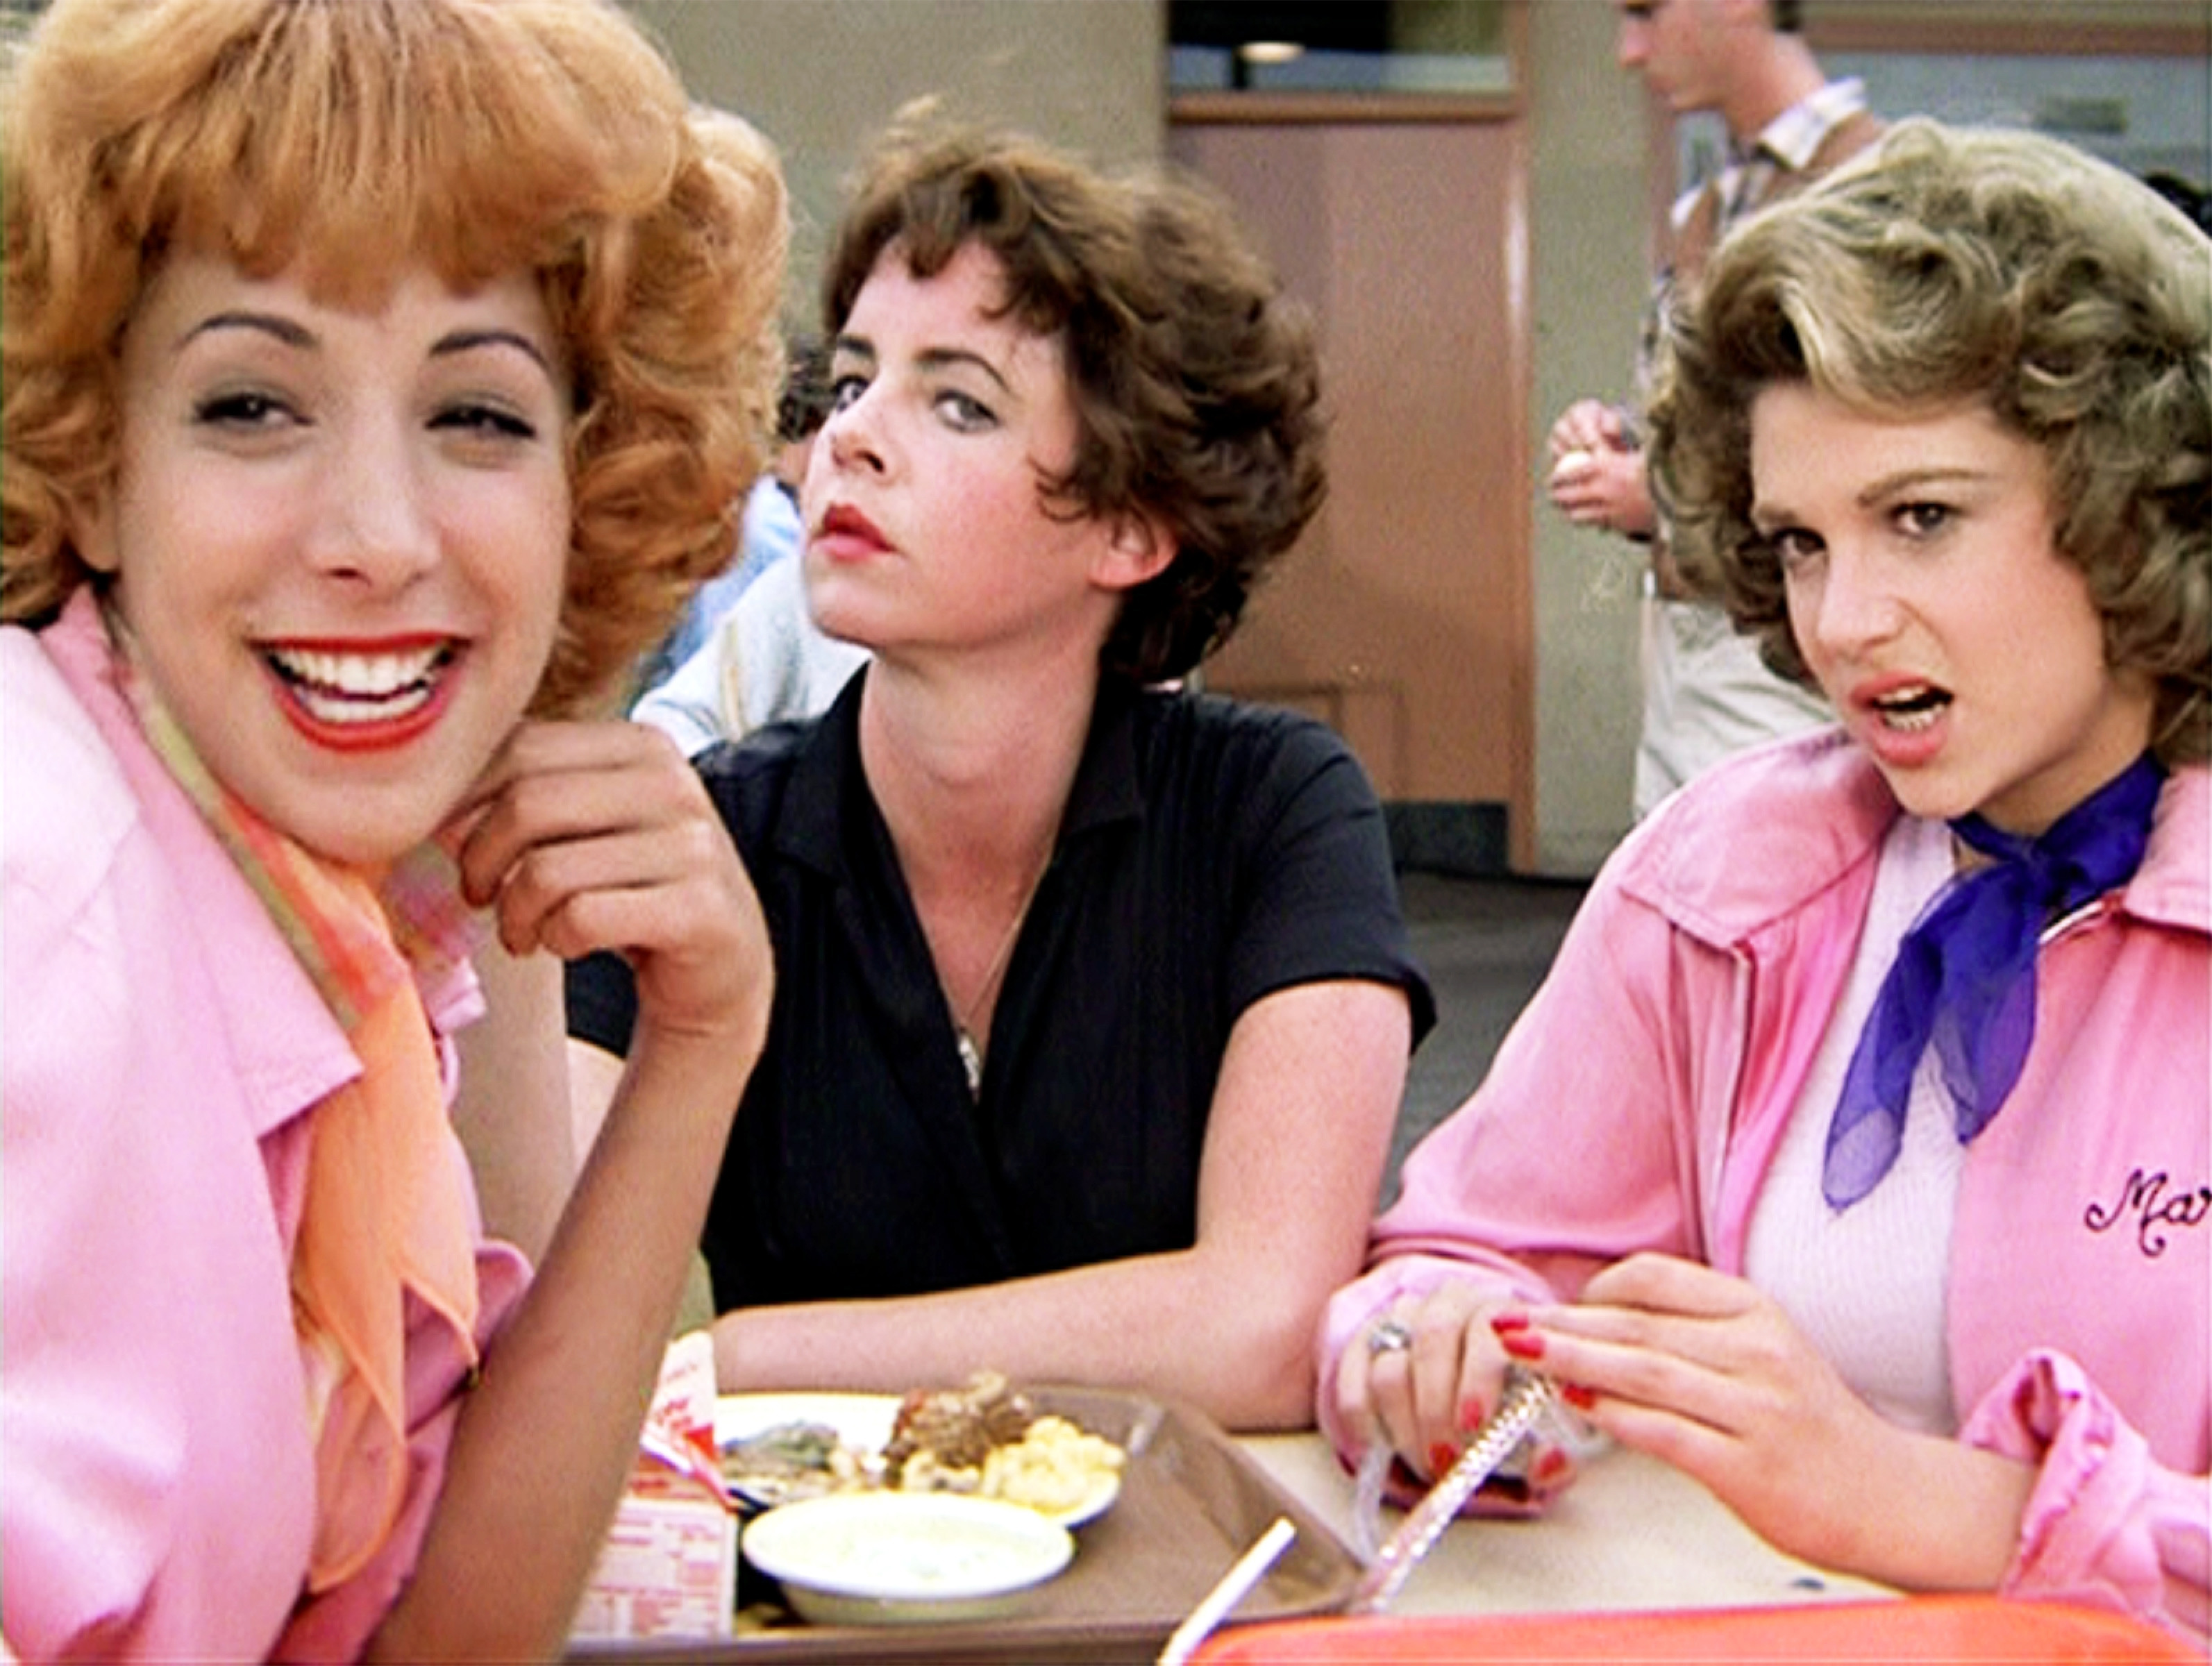 Didi Conn dans le rôle de Frenchy, Stockard Channing dans celui de Betty Rizzo, et Dinah Manoff dans celui de Marty Maraschino dans "Grease" le 16 juin 1978 | Source : Getty Images